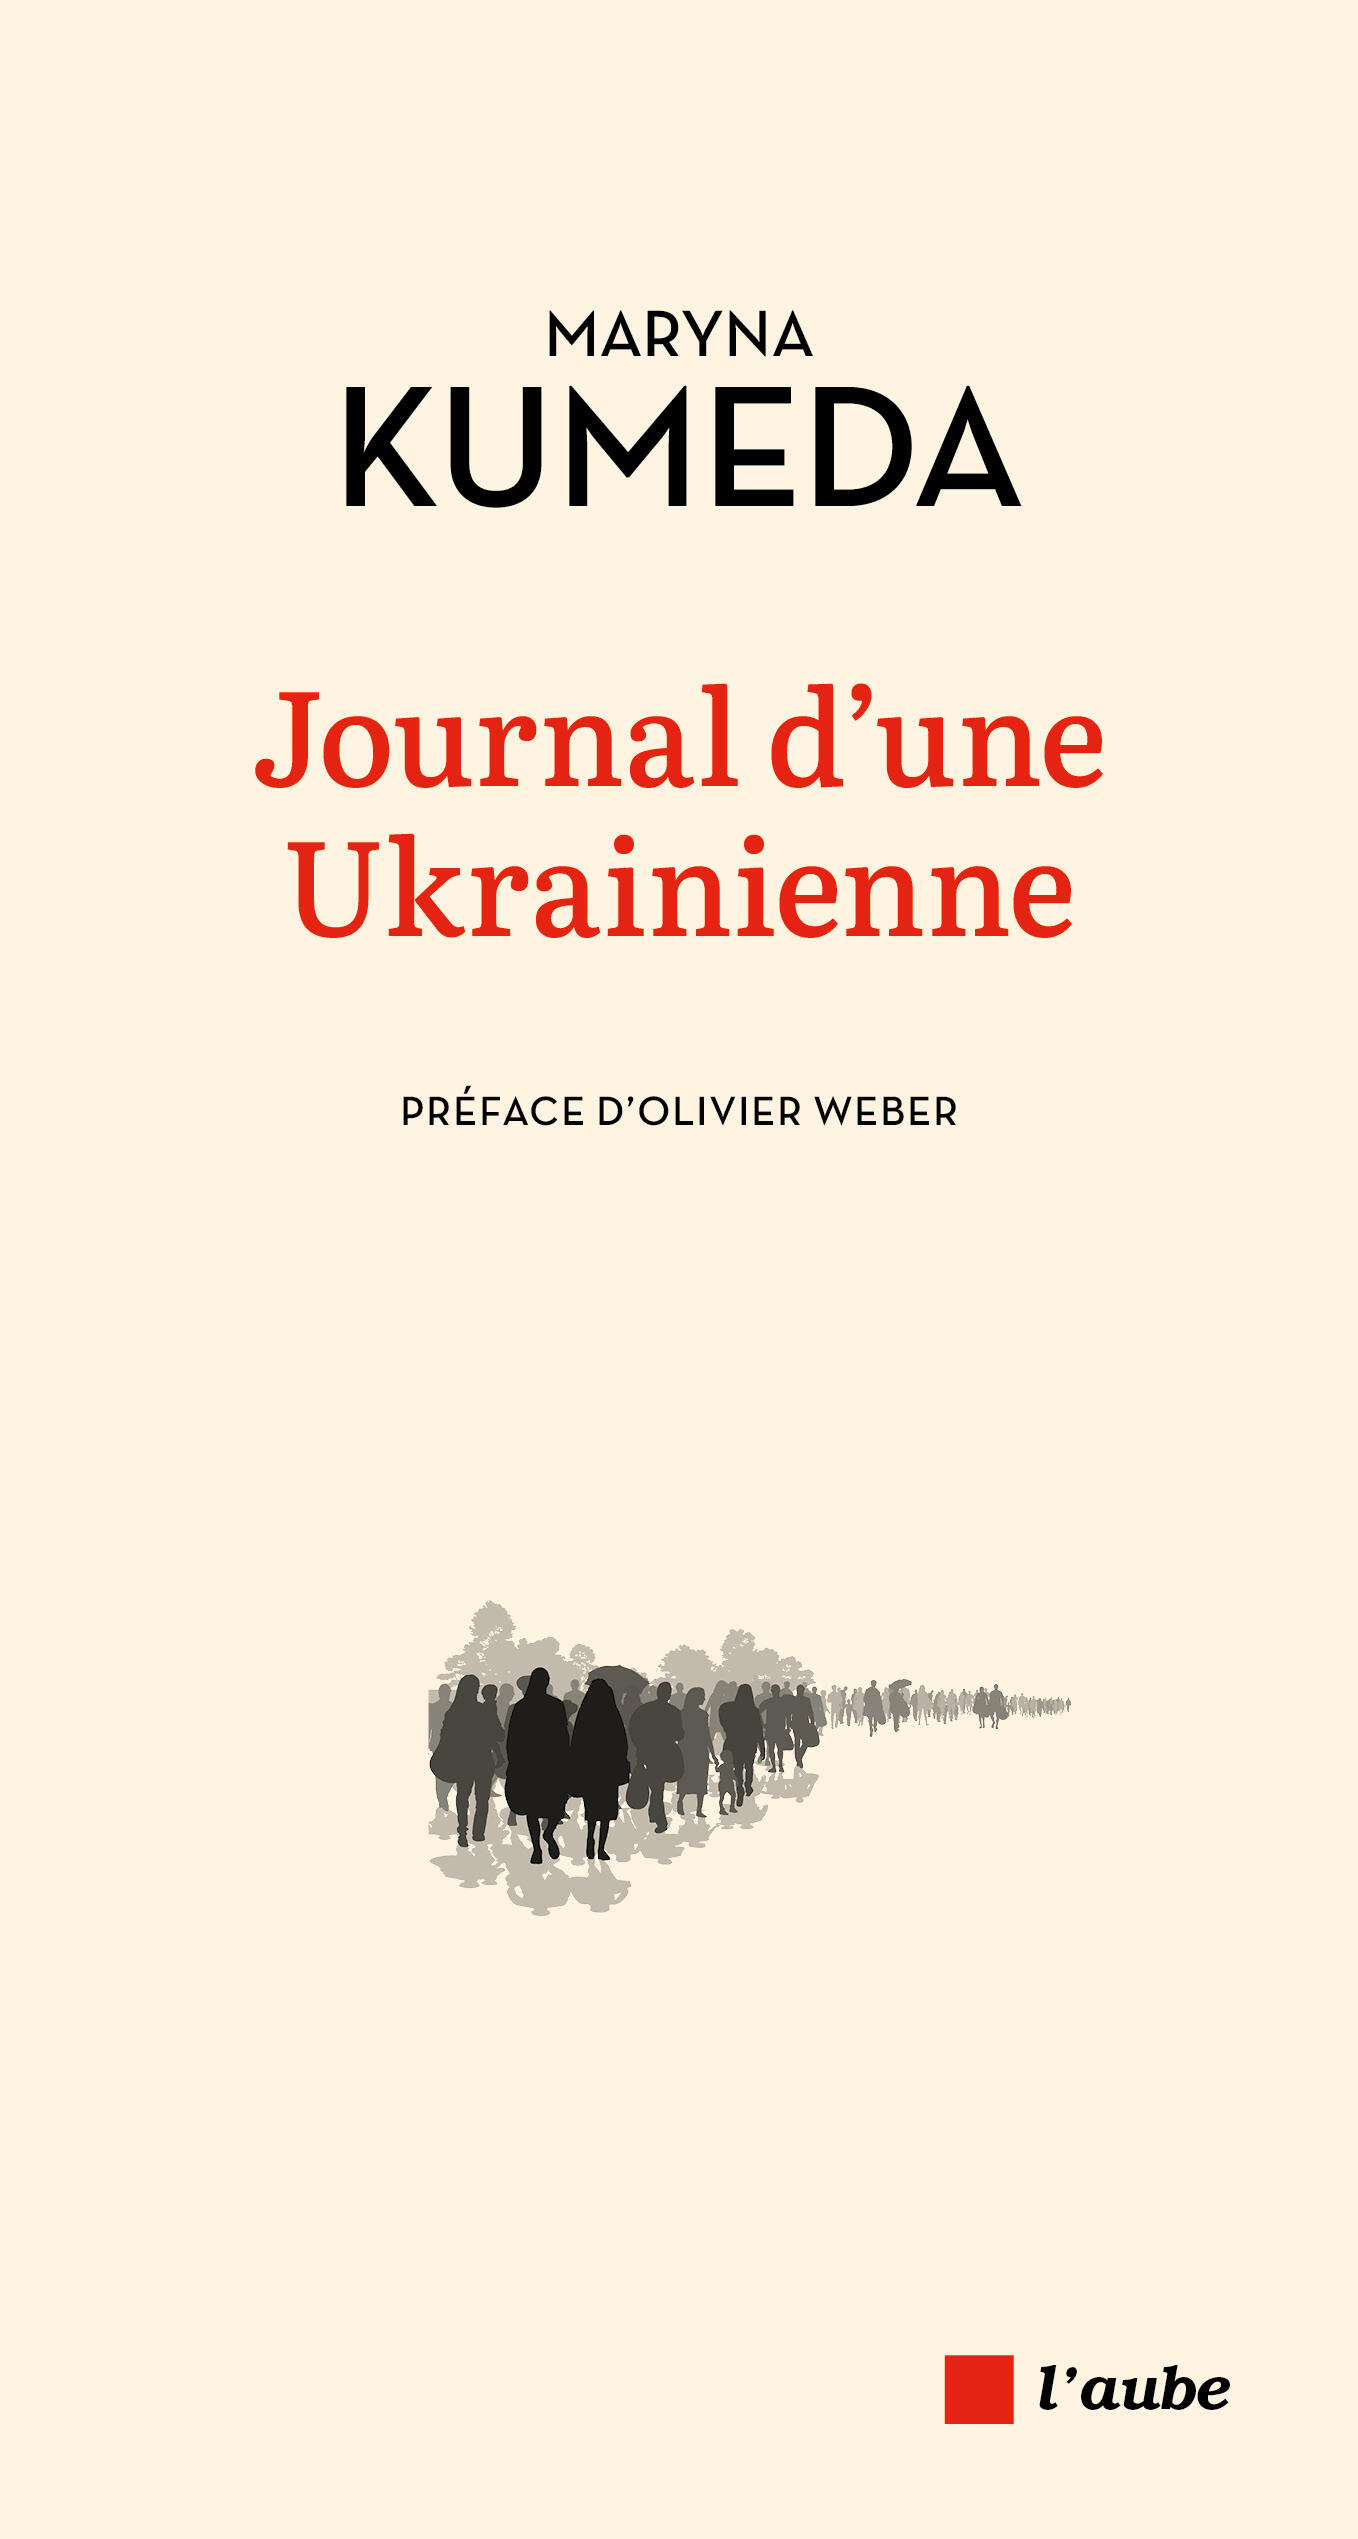 Journal d'une Ukrainienne